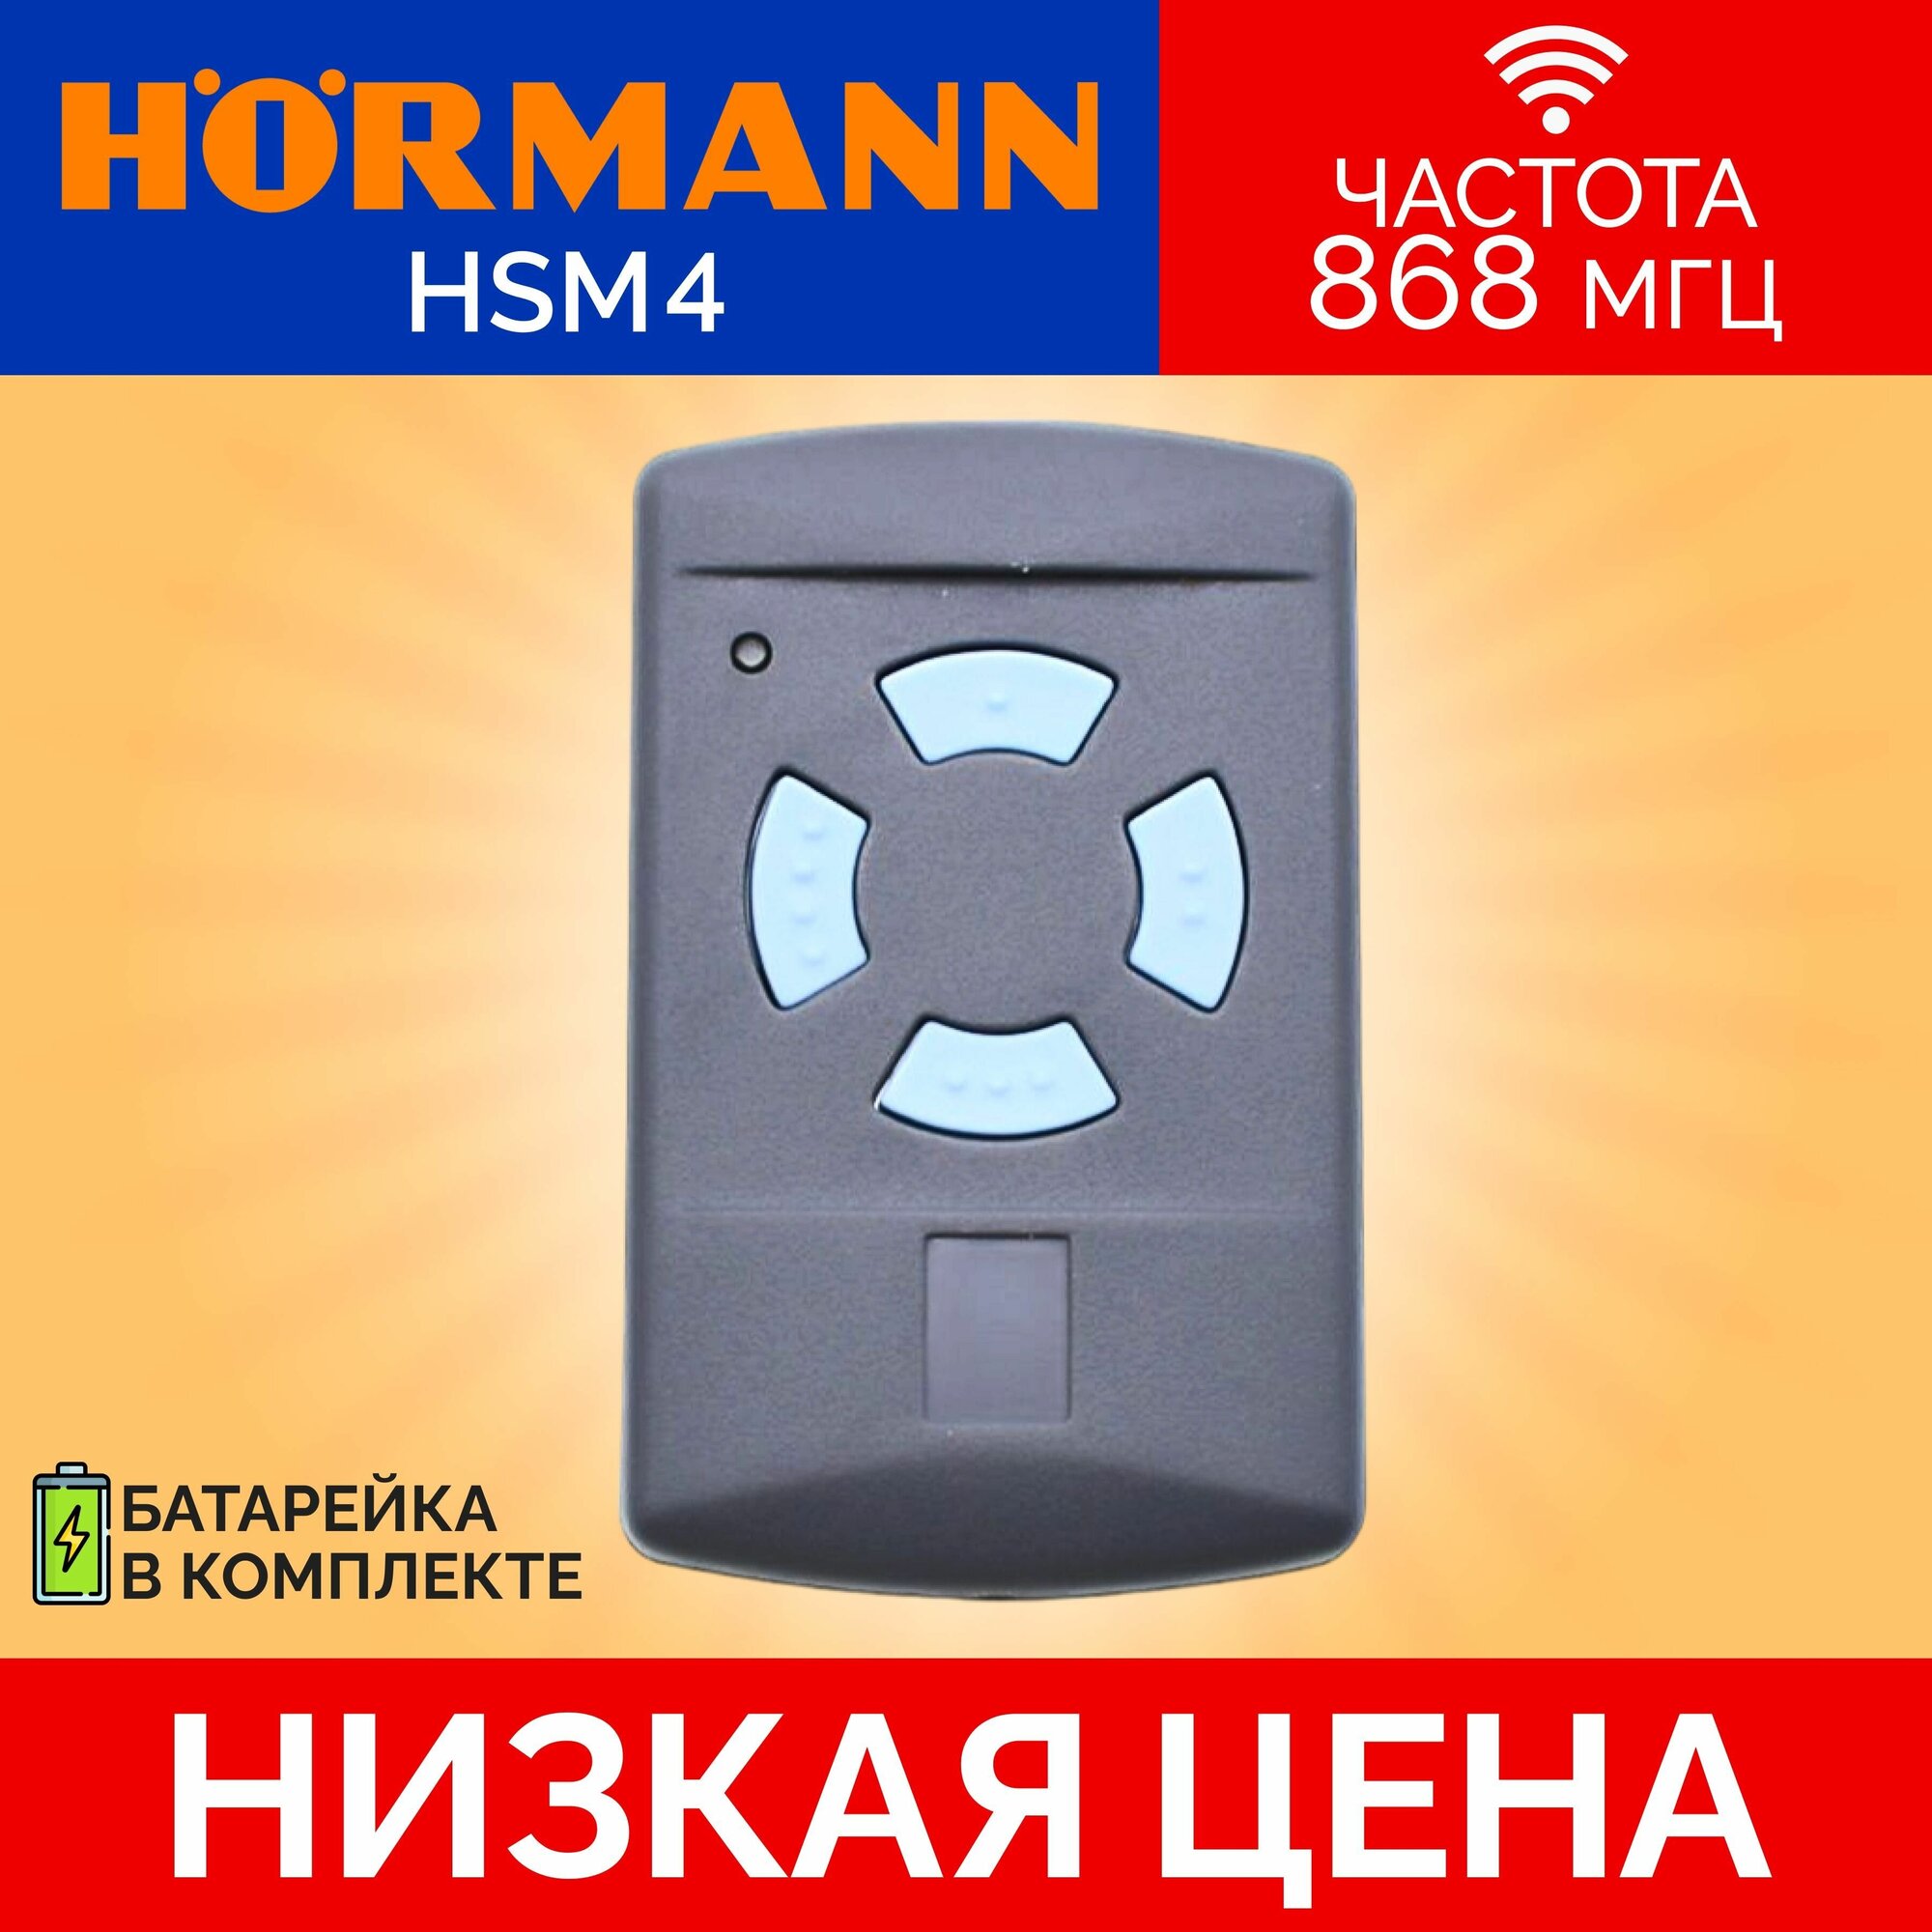 Пульт/брелок для автоматических ворот и шлагбаумов hormann(хорман) HSM4, 868 Мгц